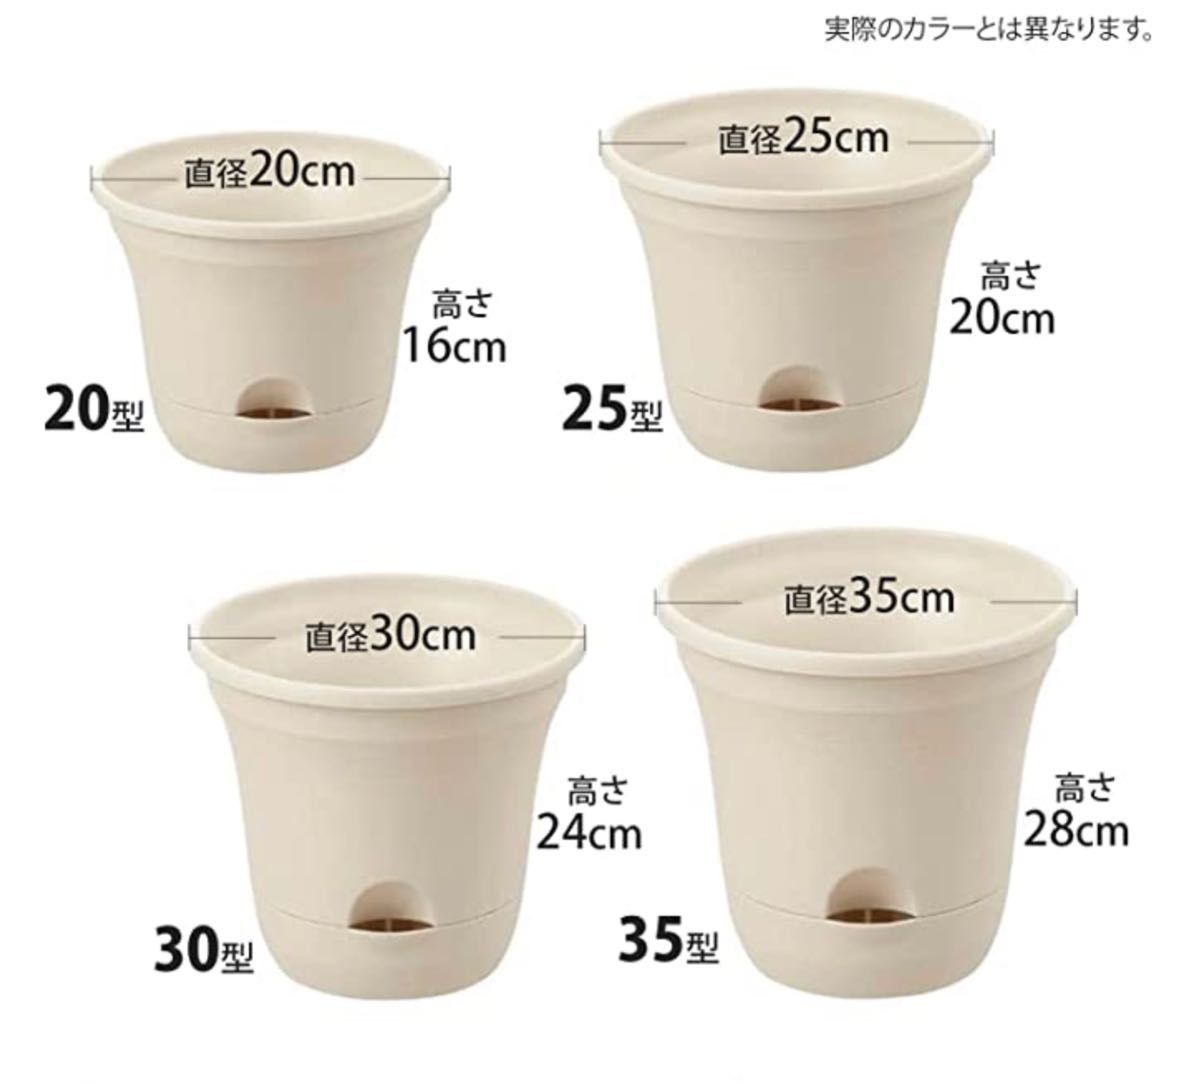 リッチェル 底面給水鉢 ウルオ ポット 25型N 薄茶 日本製×4セット